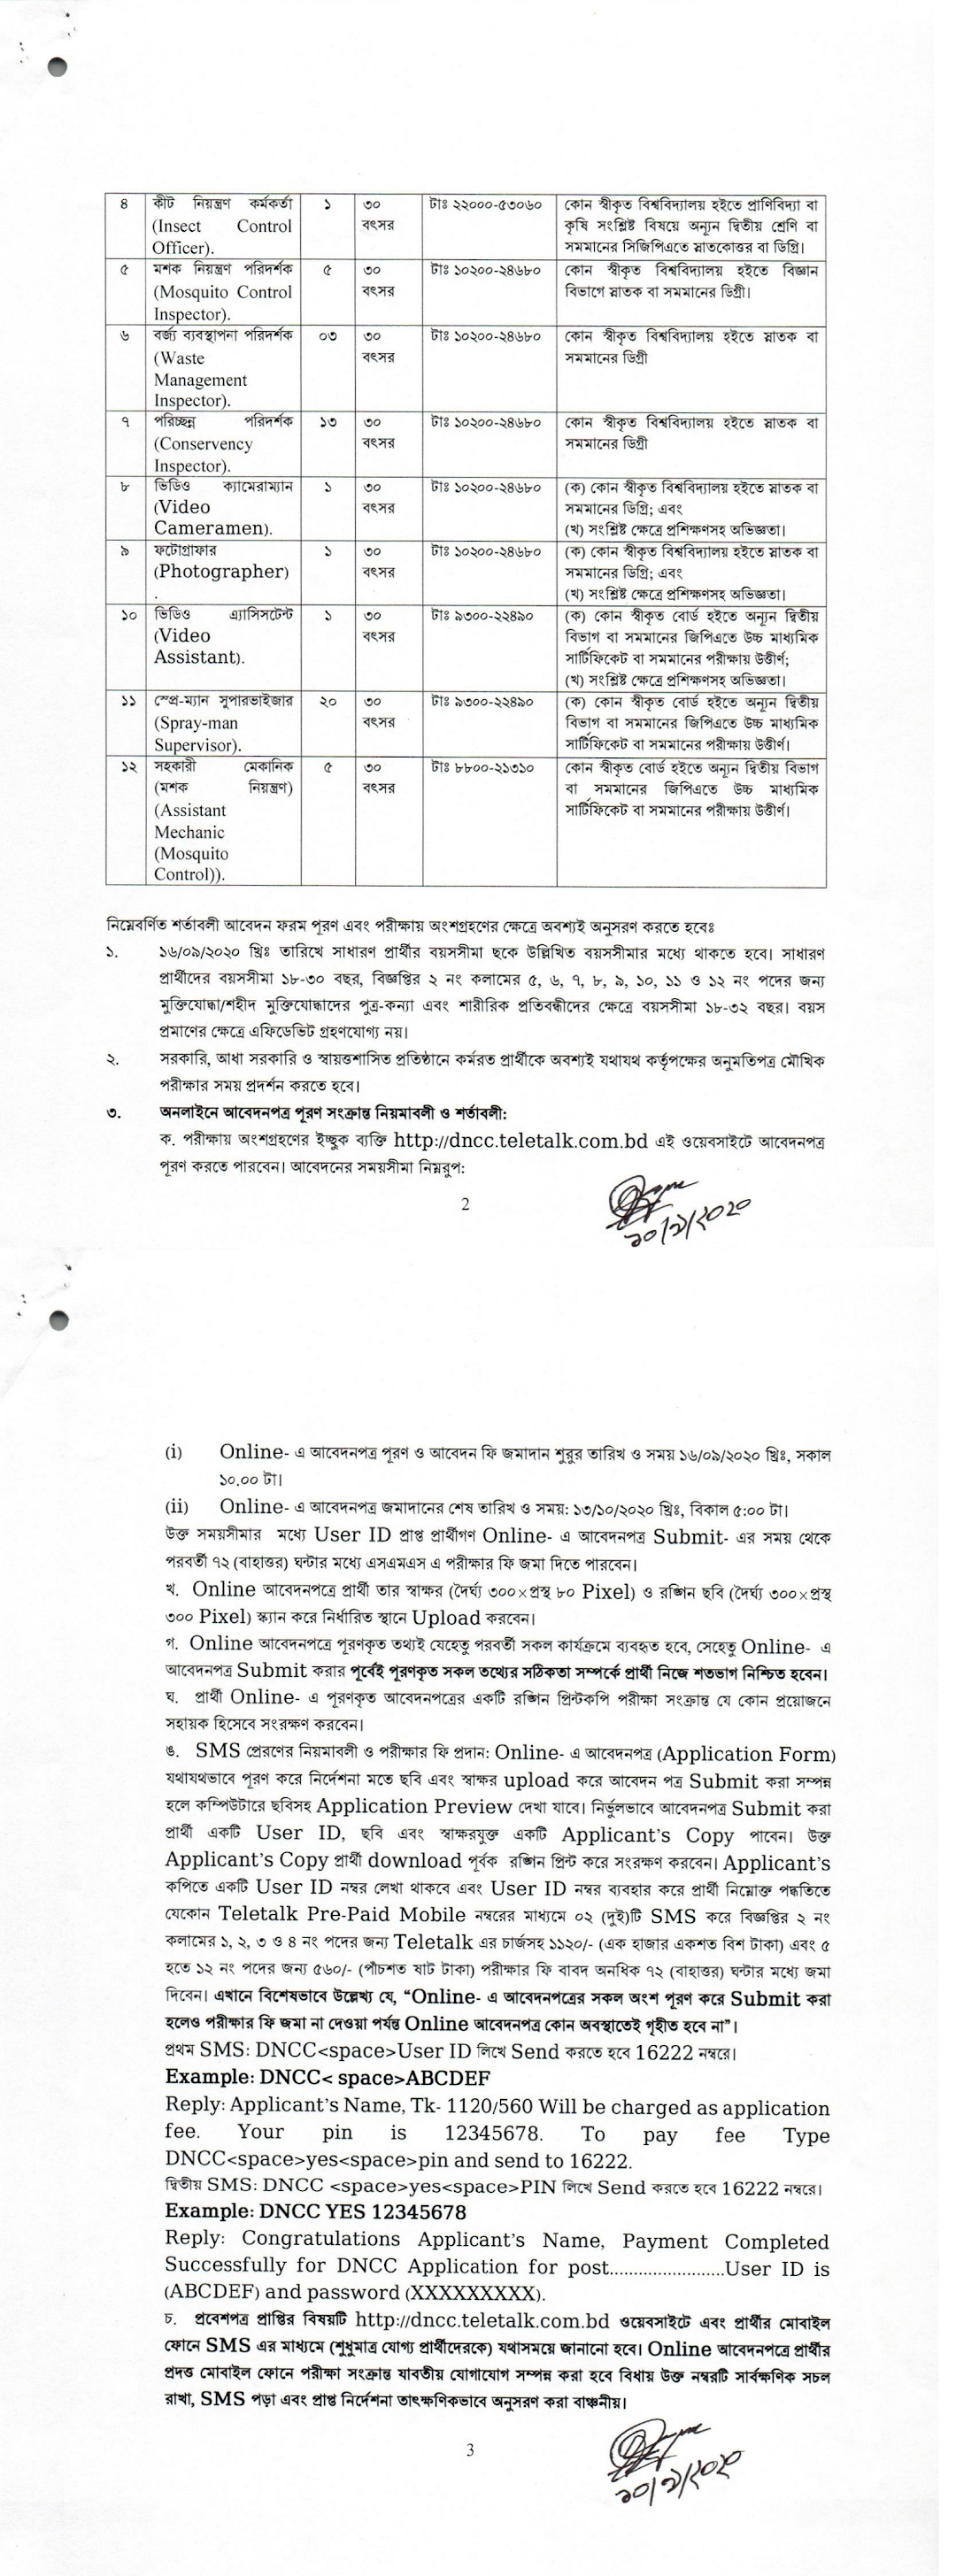 dncc.teletalk.com.bd ৫৩ পদে ঢাকা উত্তর সিটি কর্পরেশনে (DNCC) এ নিয়োগ বিজ্ঞপ্তি (সংশোধিত)